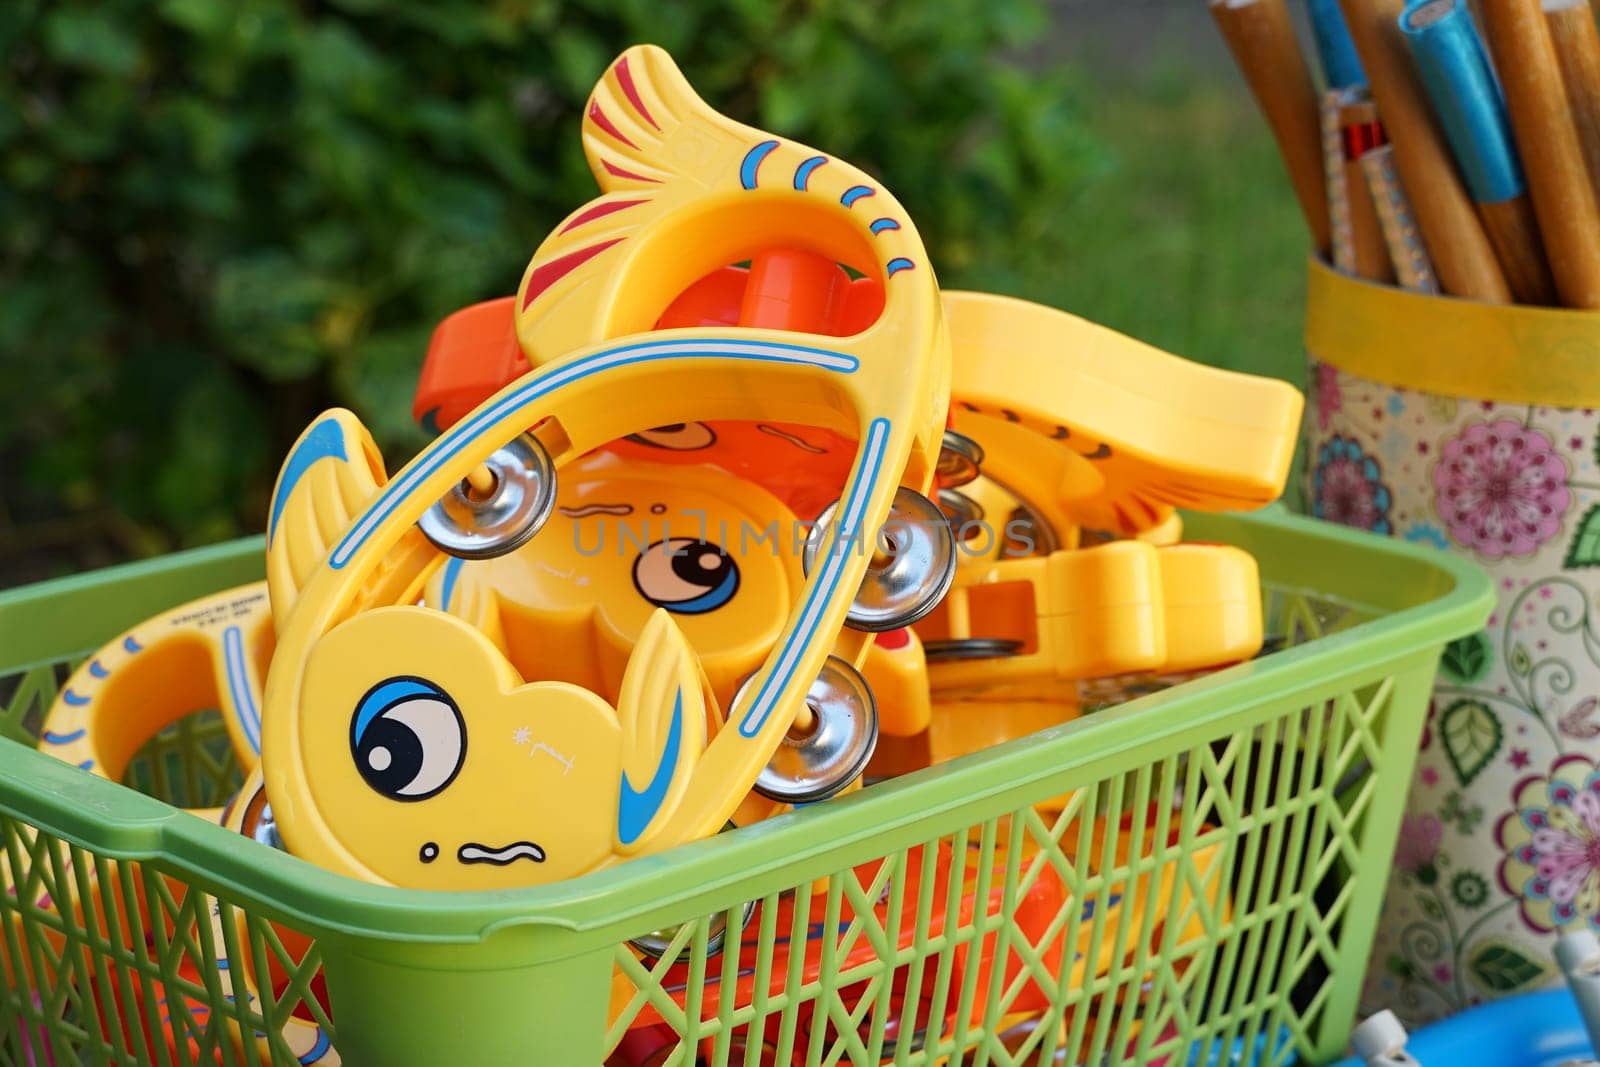 Children's toys in a green plastic basket by Serhii_Voroshchuk